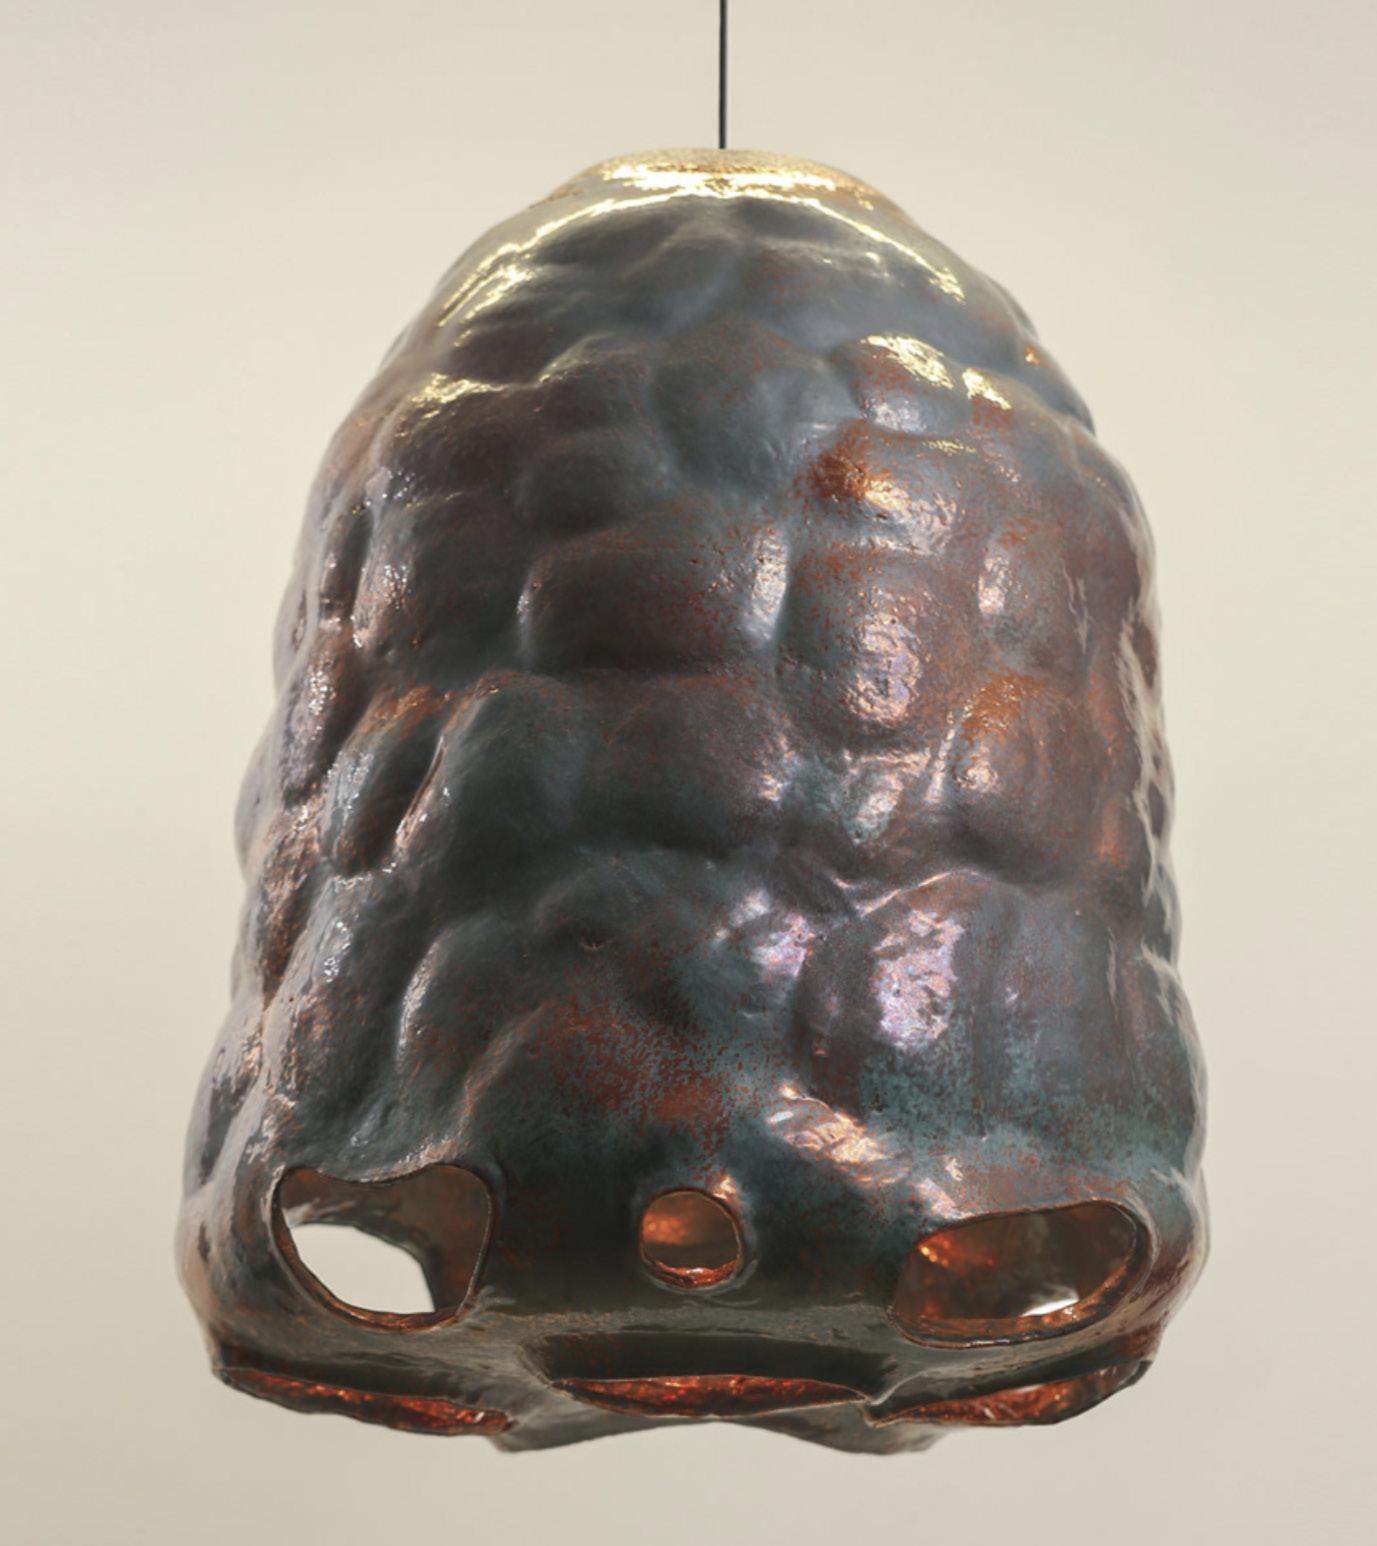 Lampe pendante Makivka en céramique 85 de Makhno
Dimensions : D 80 x H 85 cm
Matériaux : Céramique
Également disponible en cuivre.

Toutes nos lampes peuvent être câblées en fonction de chaque pays. Si elle est vendue aux États-Unis, elle sera